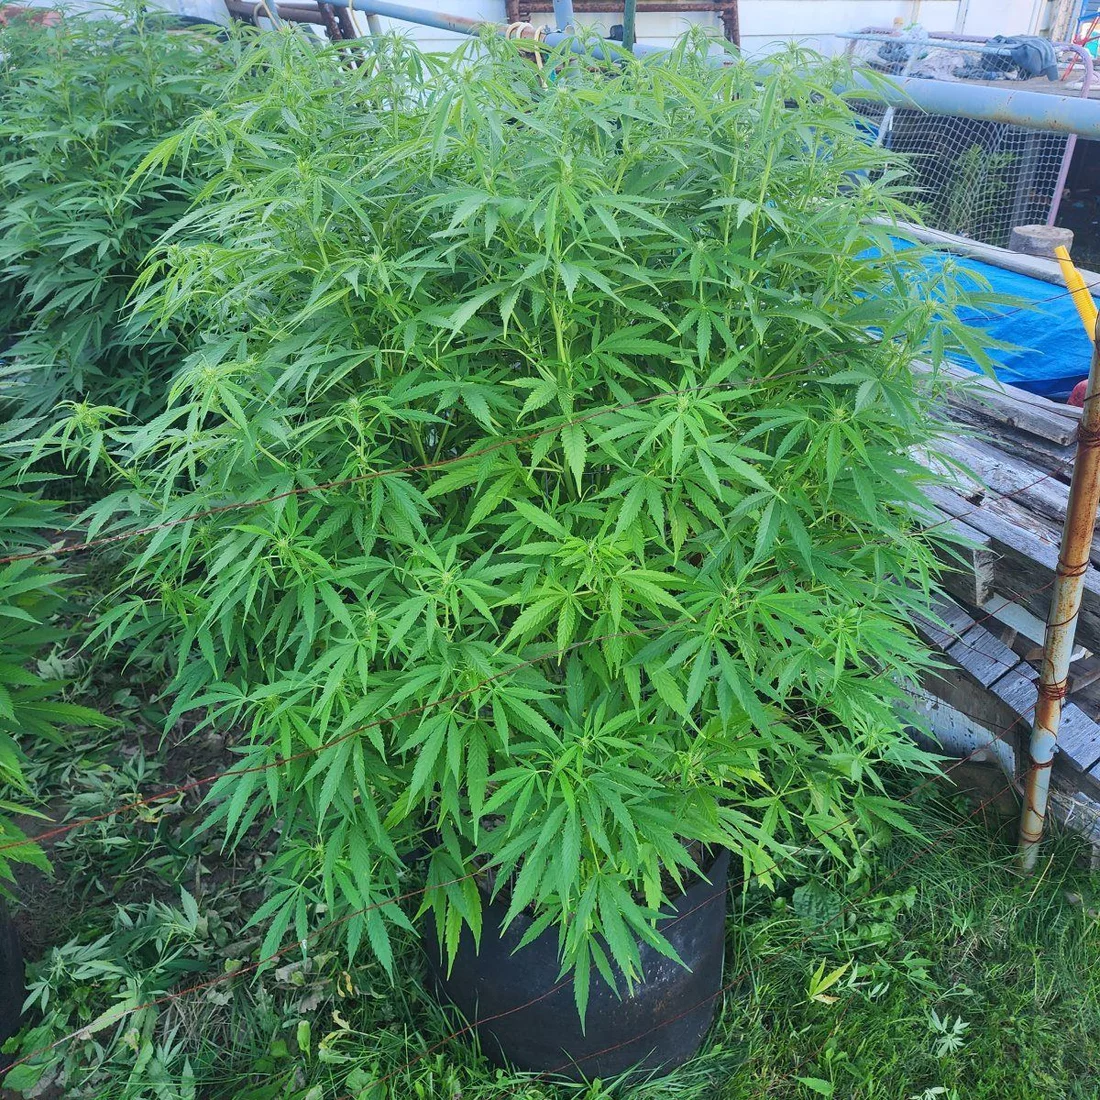 ᐅ Growing Weed UK Guide - Is it Legal in 2023?